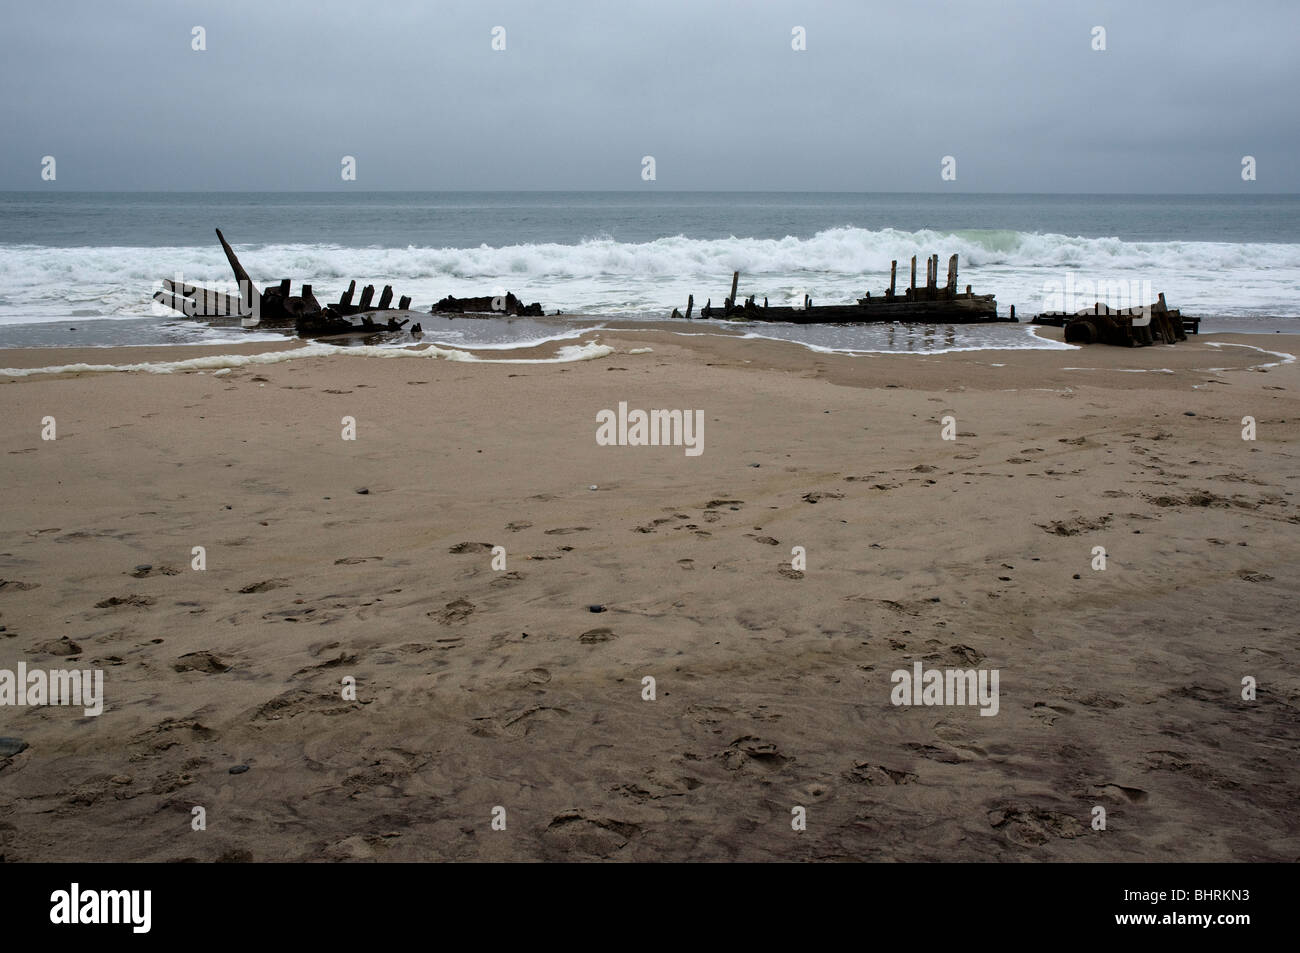 Shipwreck in Skeleton Coast, Namibia Stock Photo